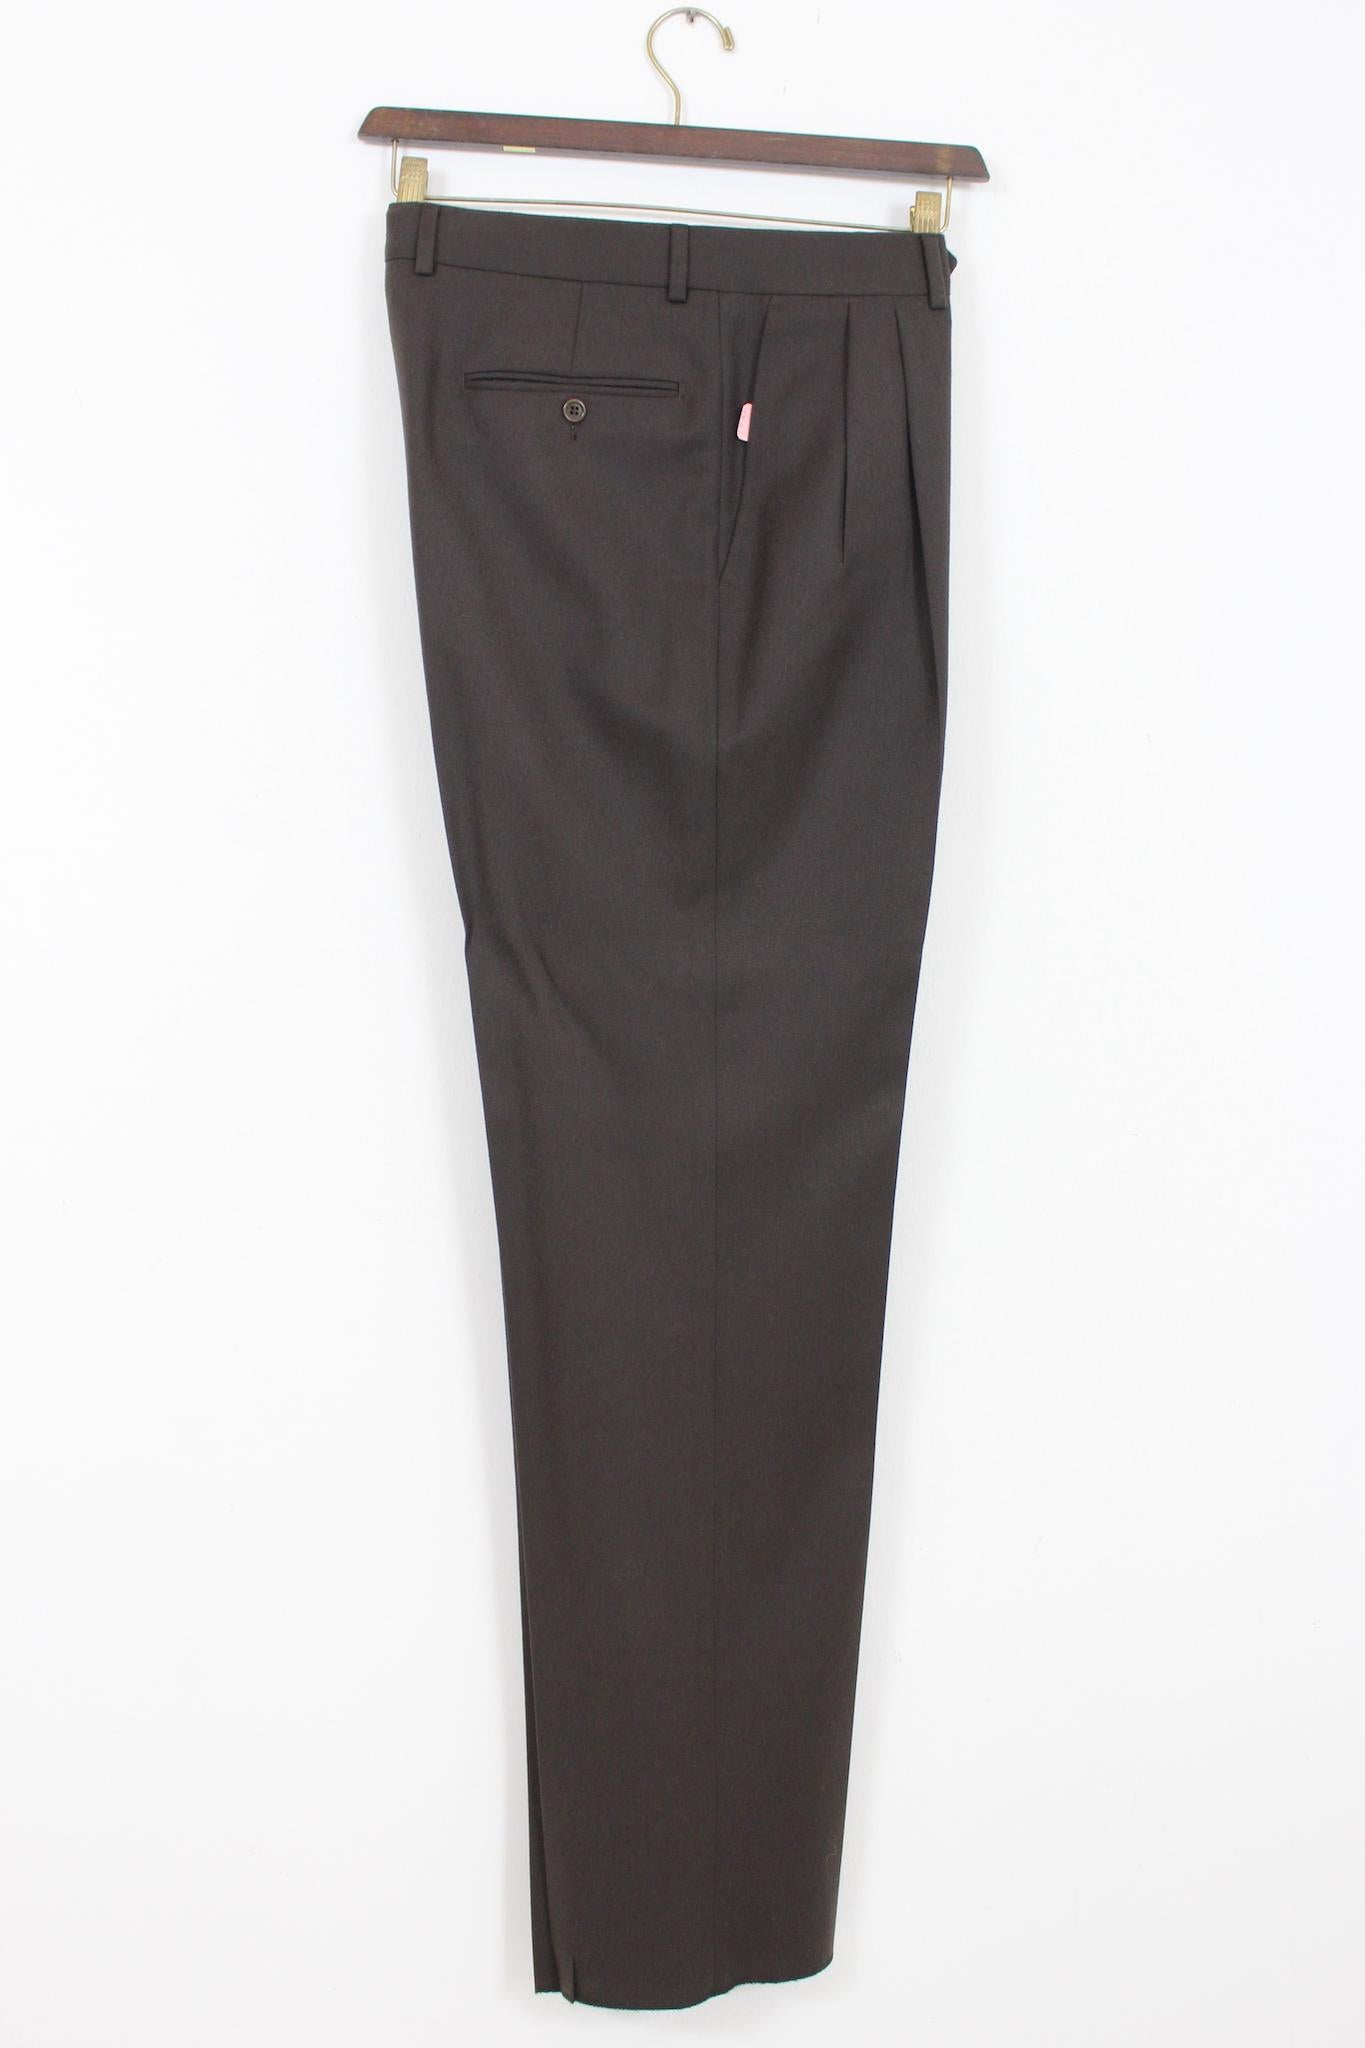 Pierre Cardin Brown Cashmere Vintage Ceremony Pants Suit For Sale 2